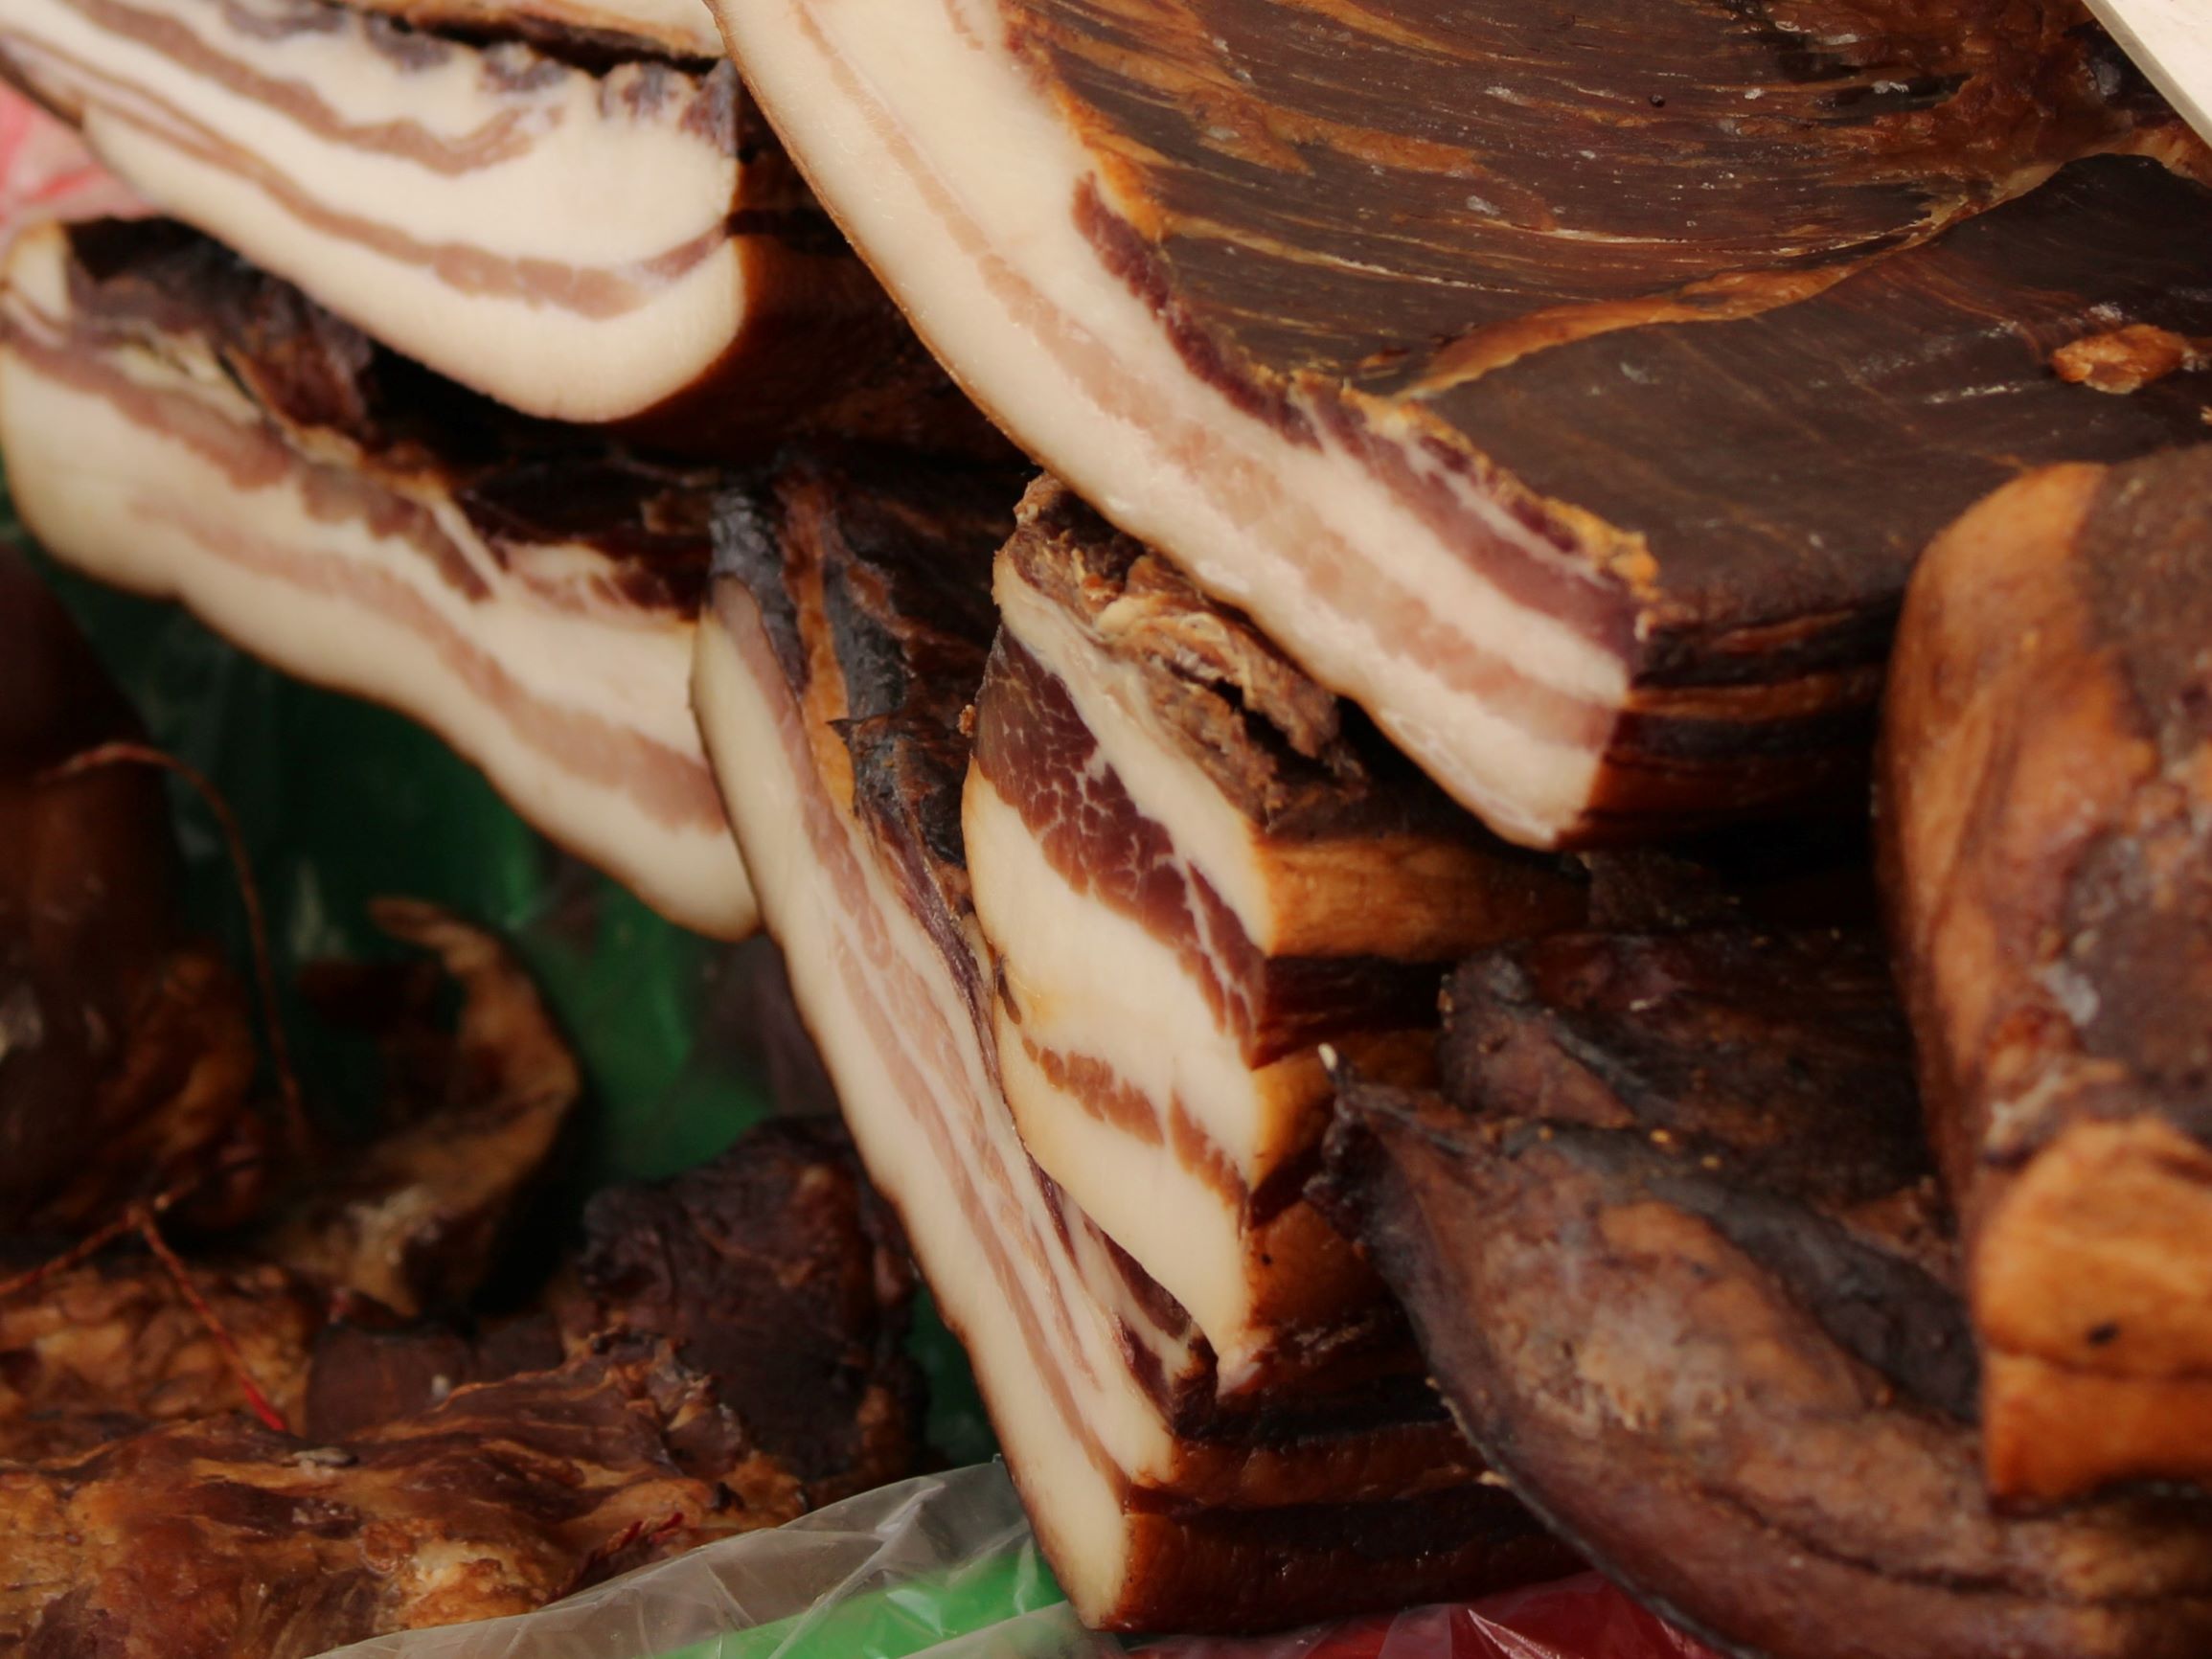 Slovenski potrošnik  ima v prodajnih vitrinah na voljo (pre)malo prašičjega mesa slovenskega porekla.